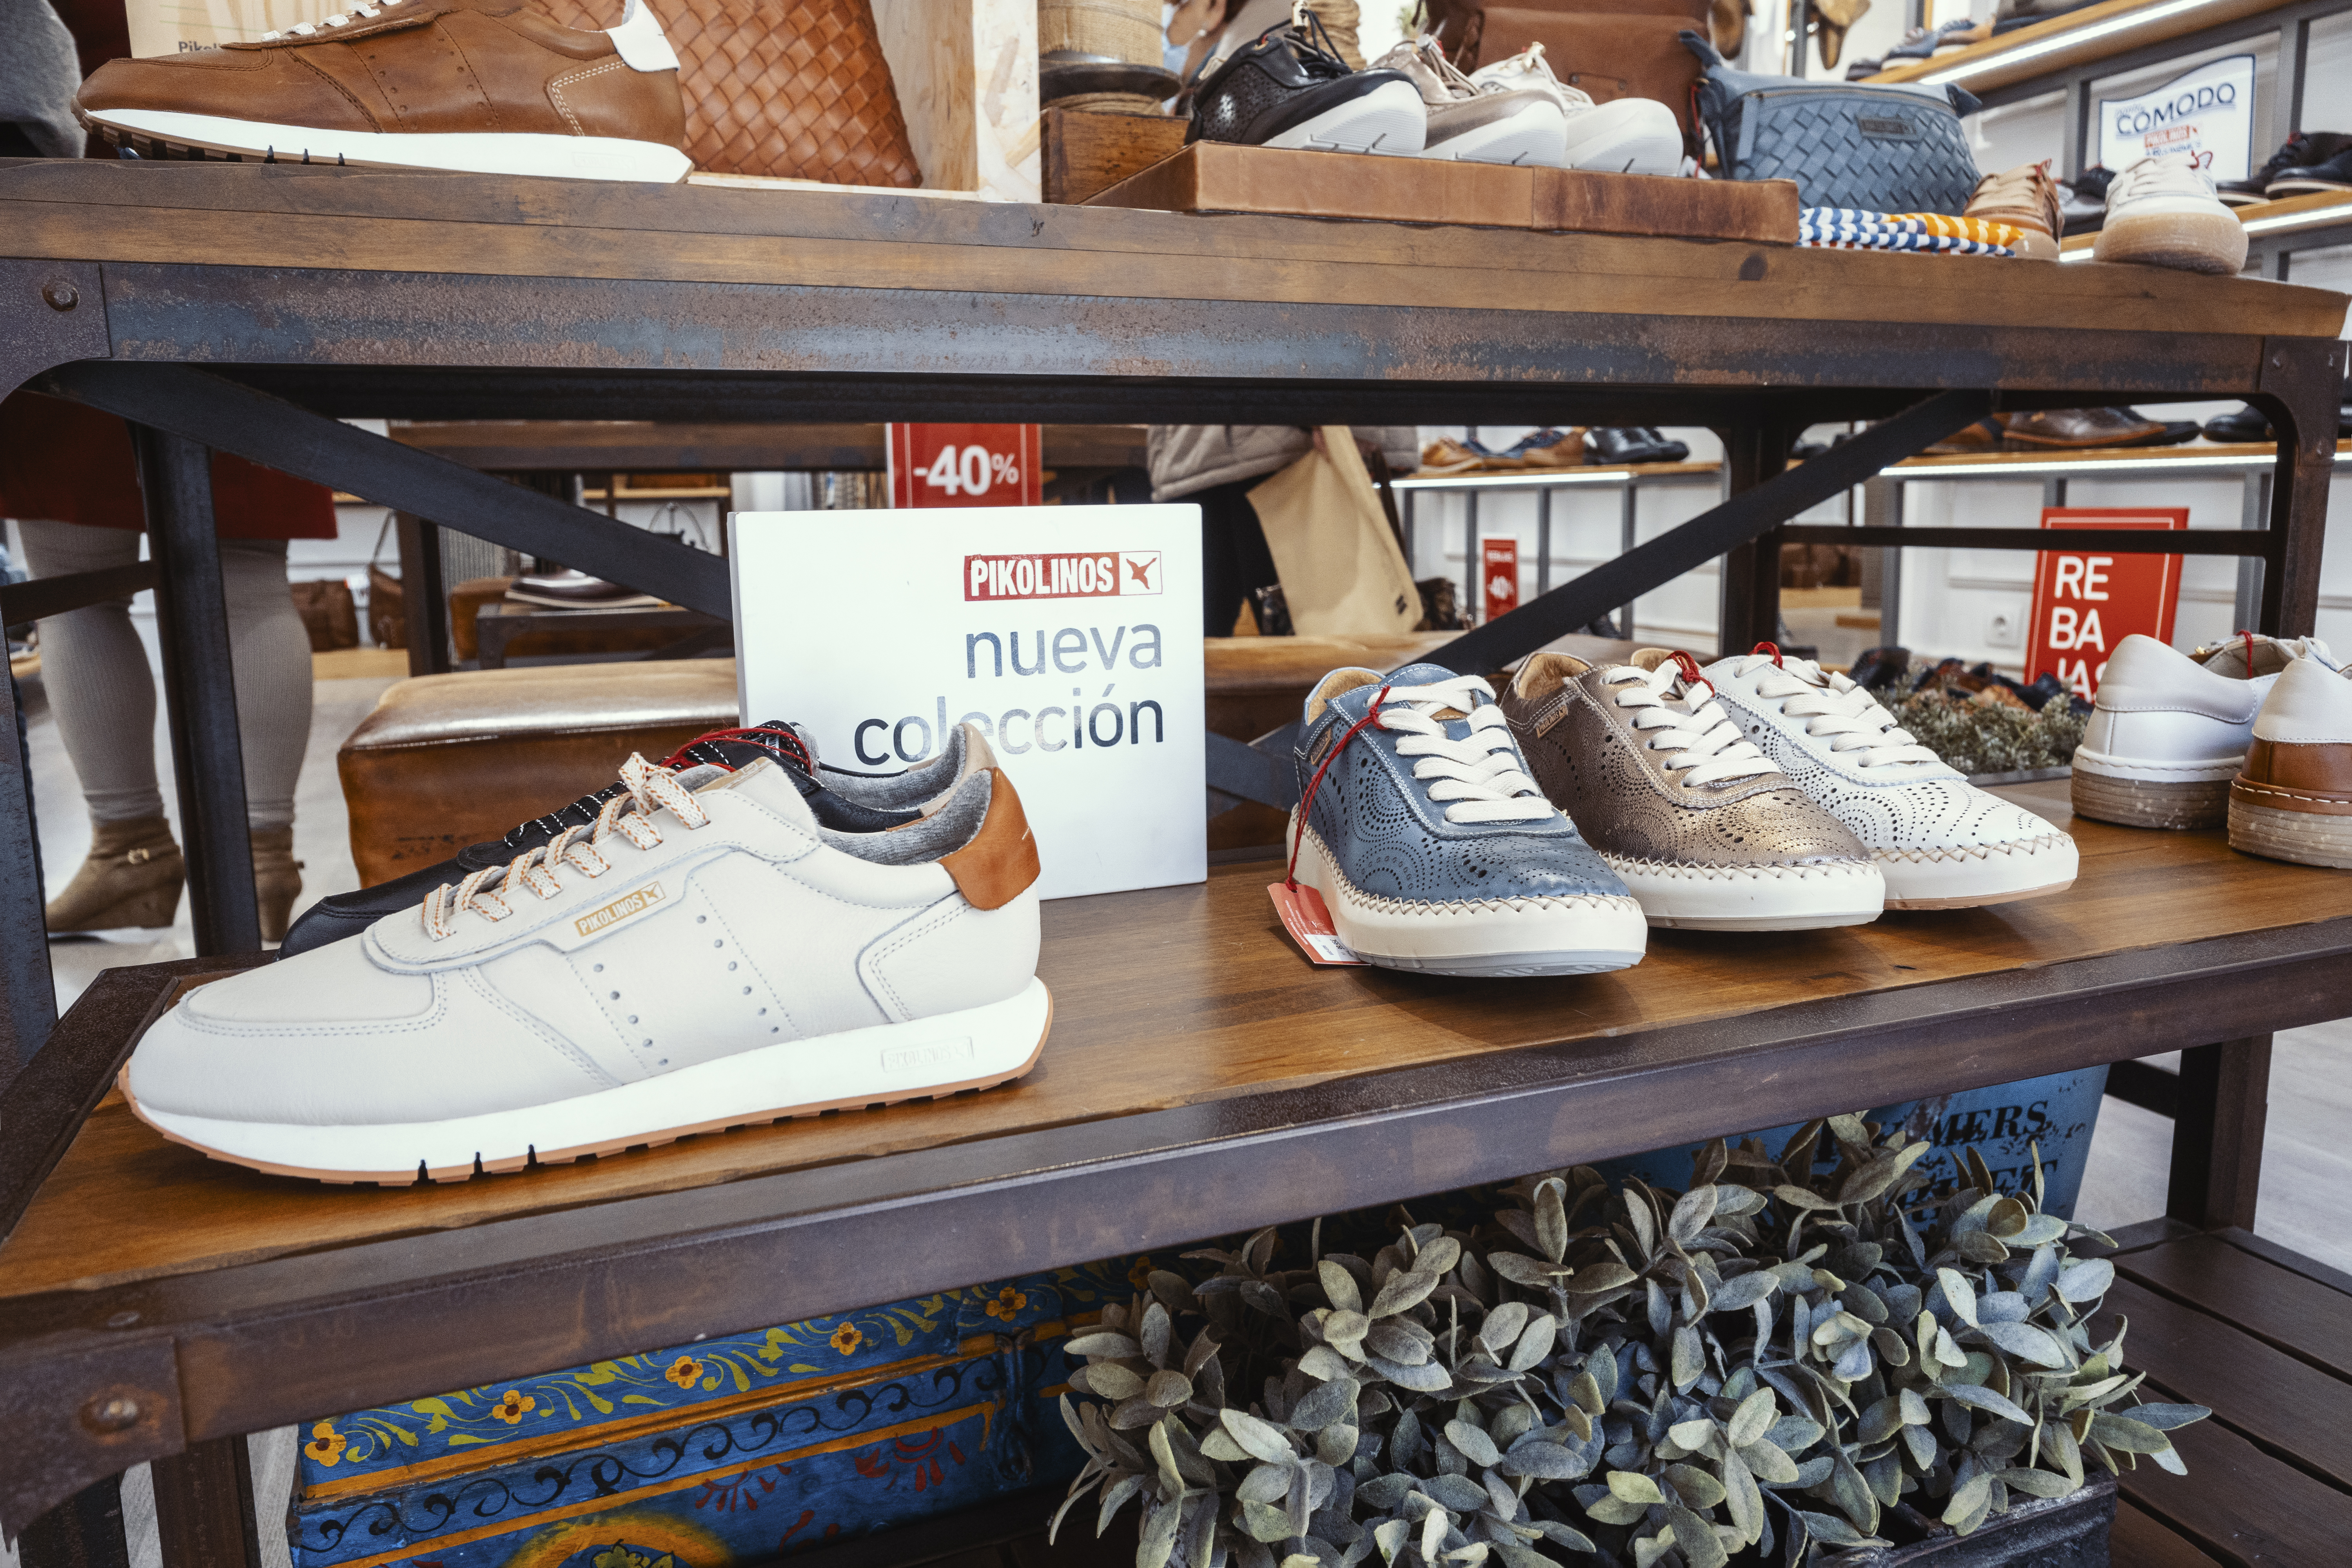 Bild von Pikolinos-Schuhen aus der neuen Kollektion im Laden in Malaga